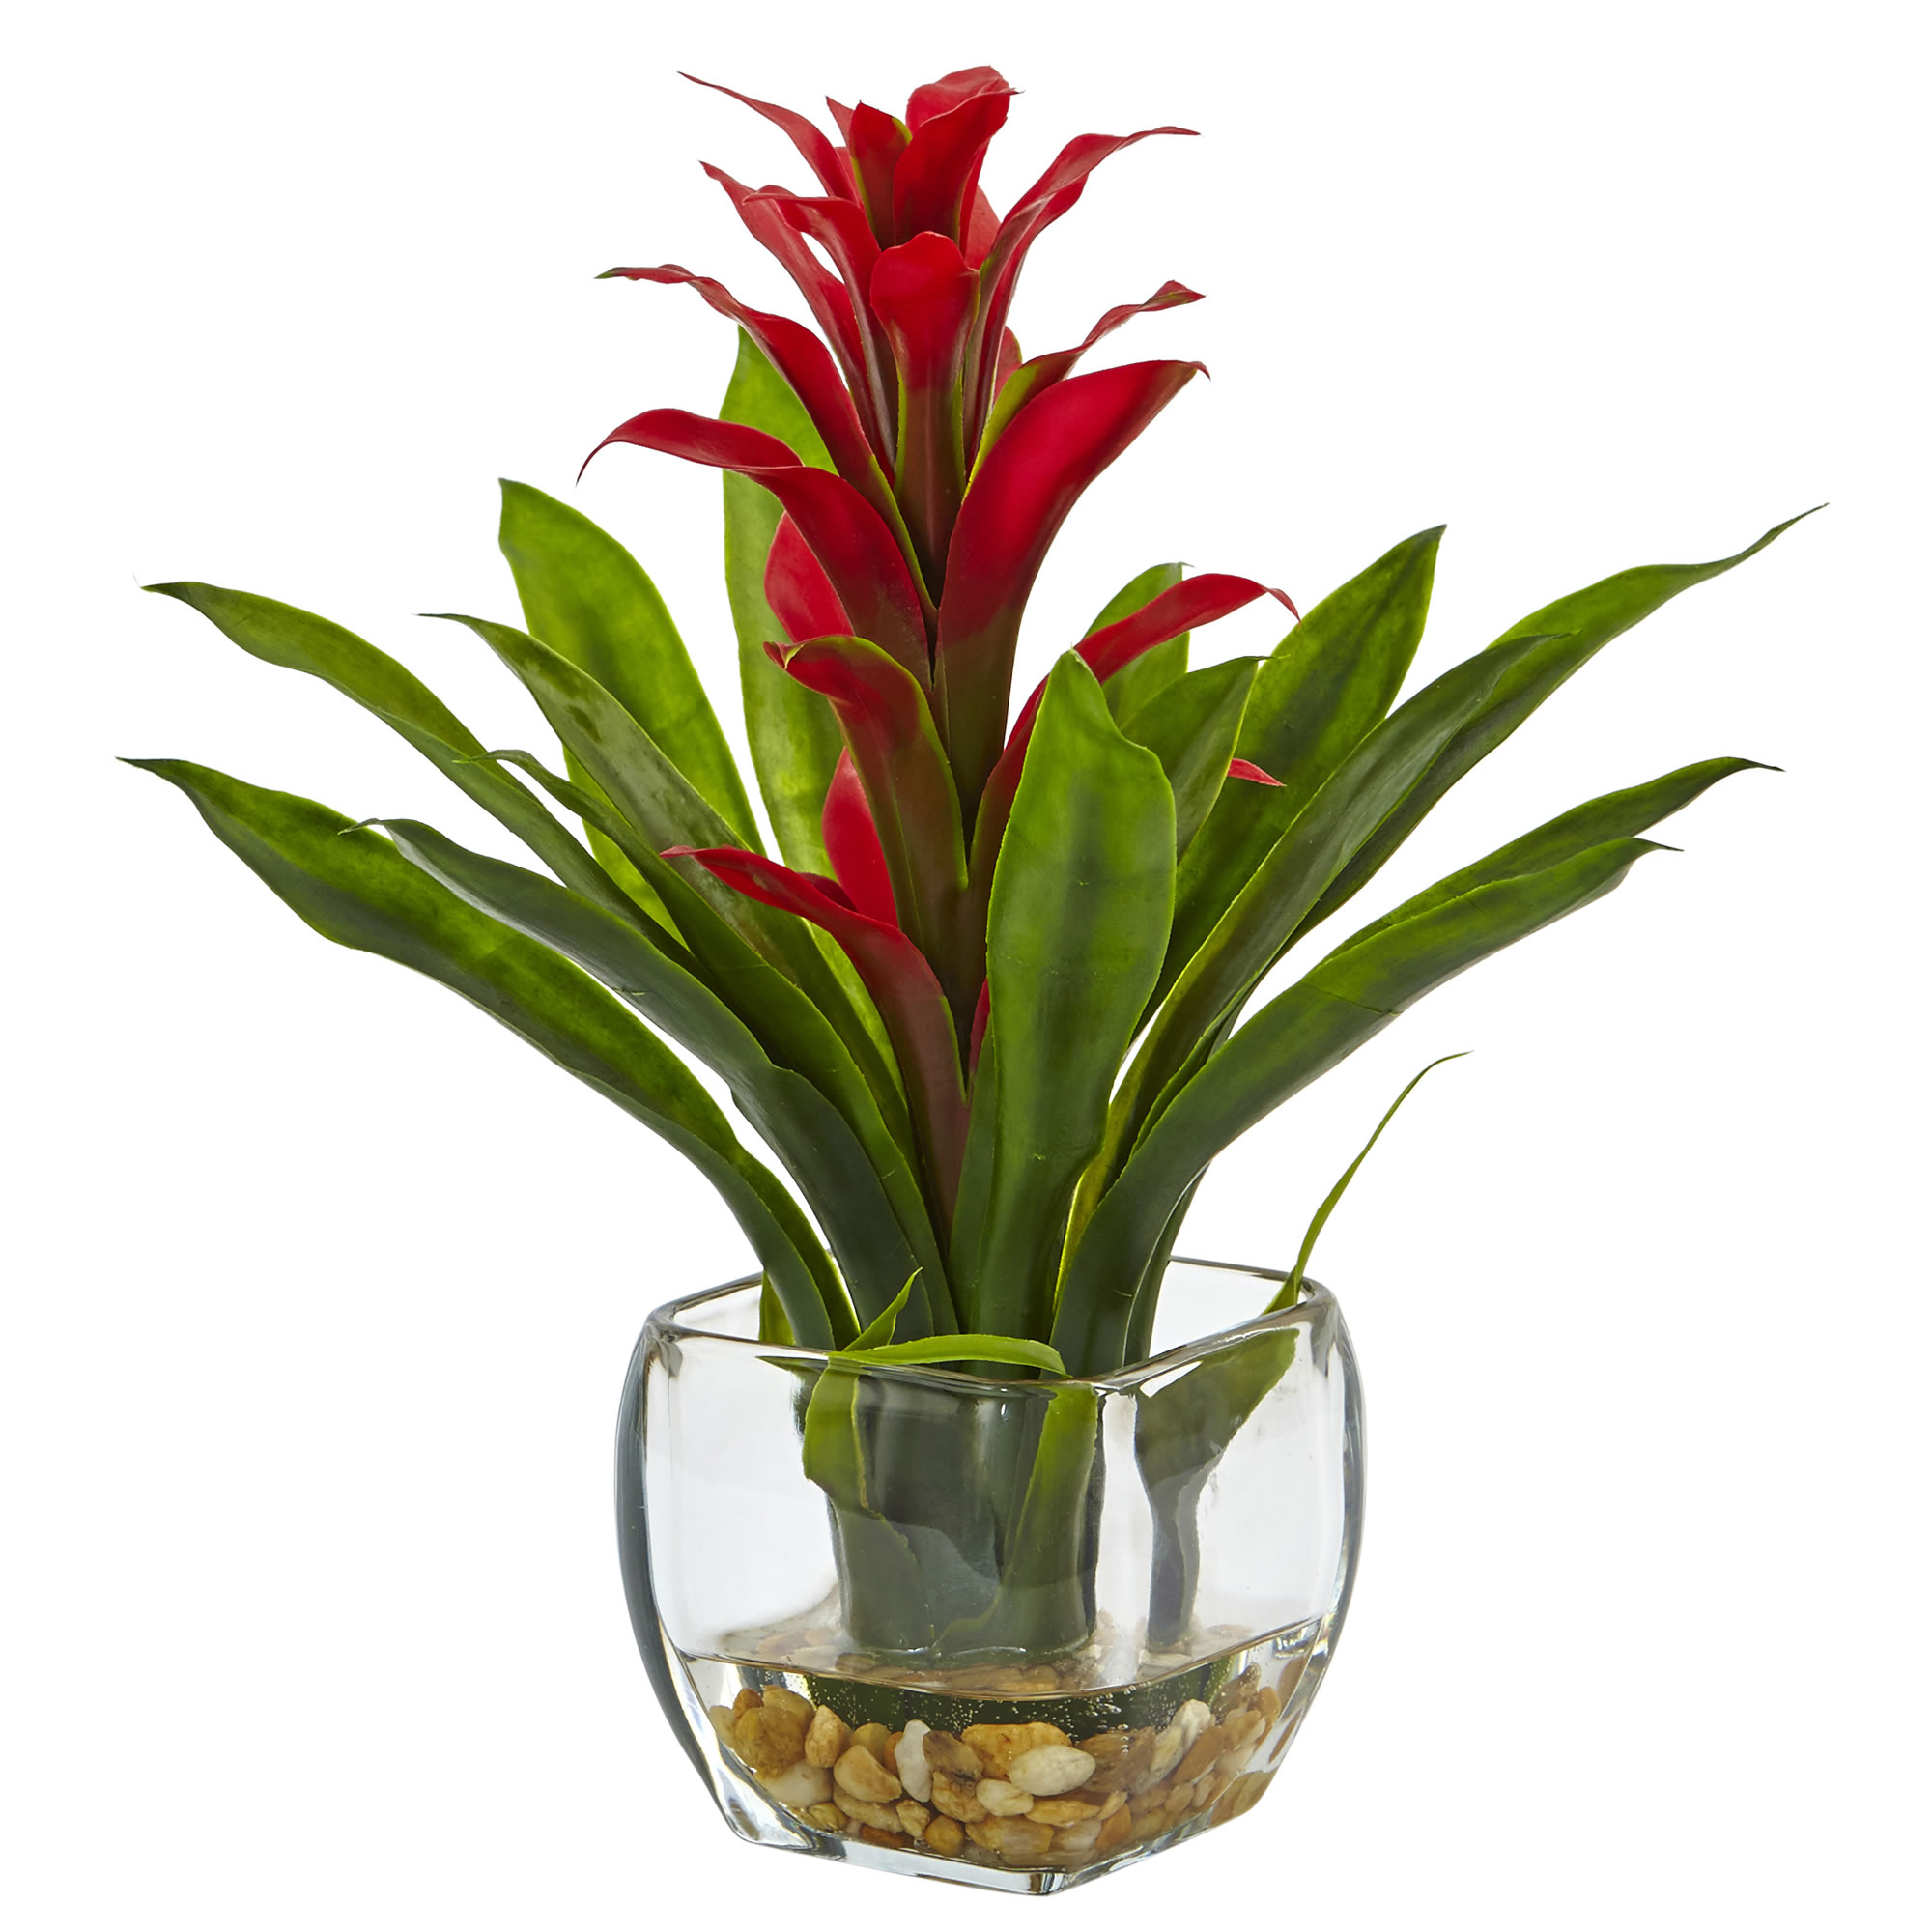 12 Inch Bromeliad In Vase Arrangement